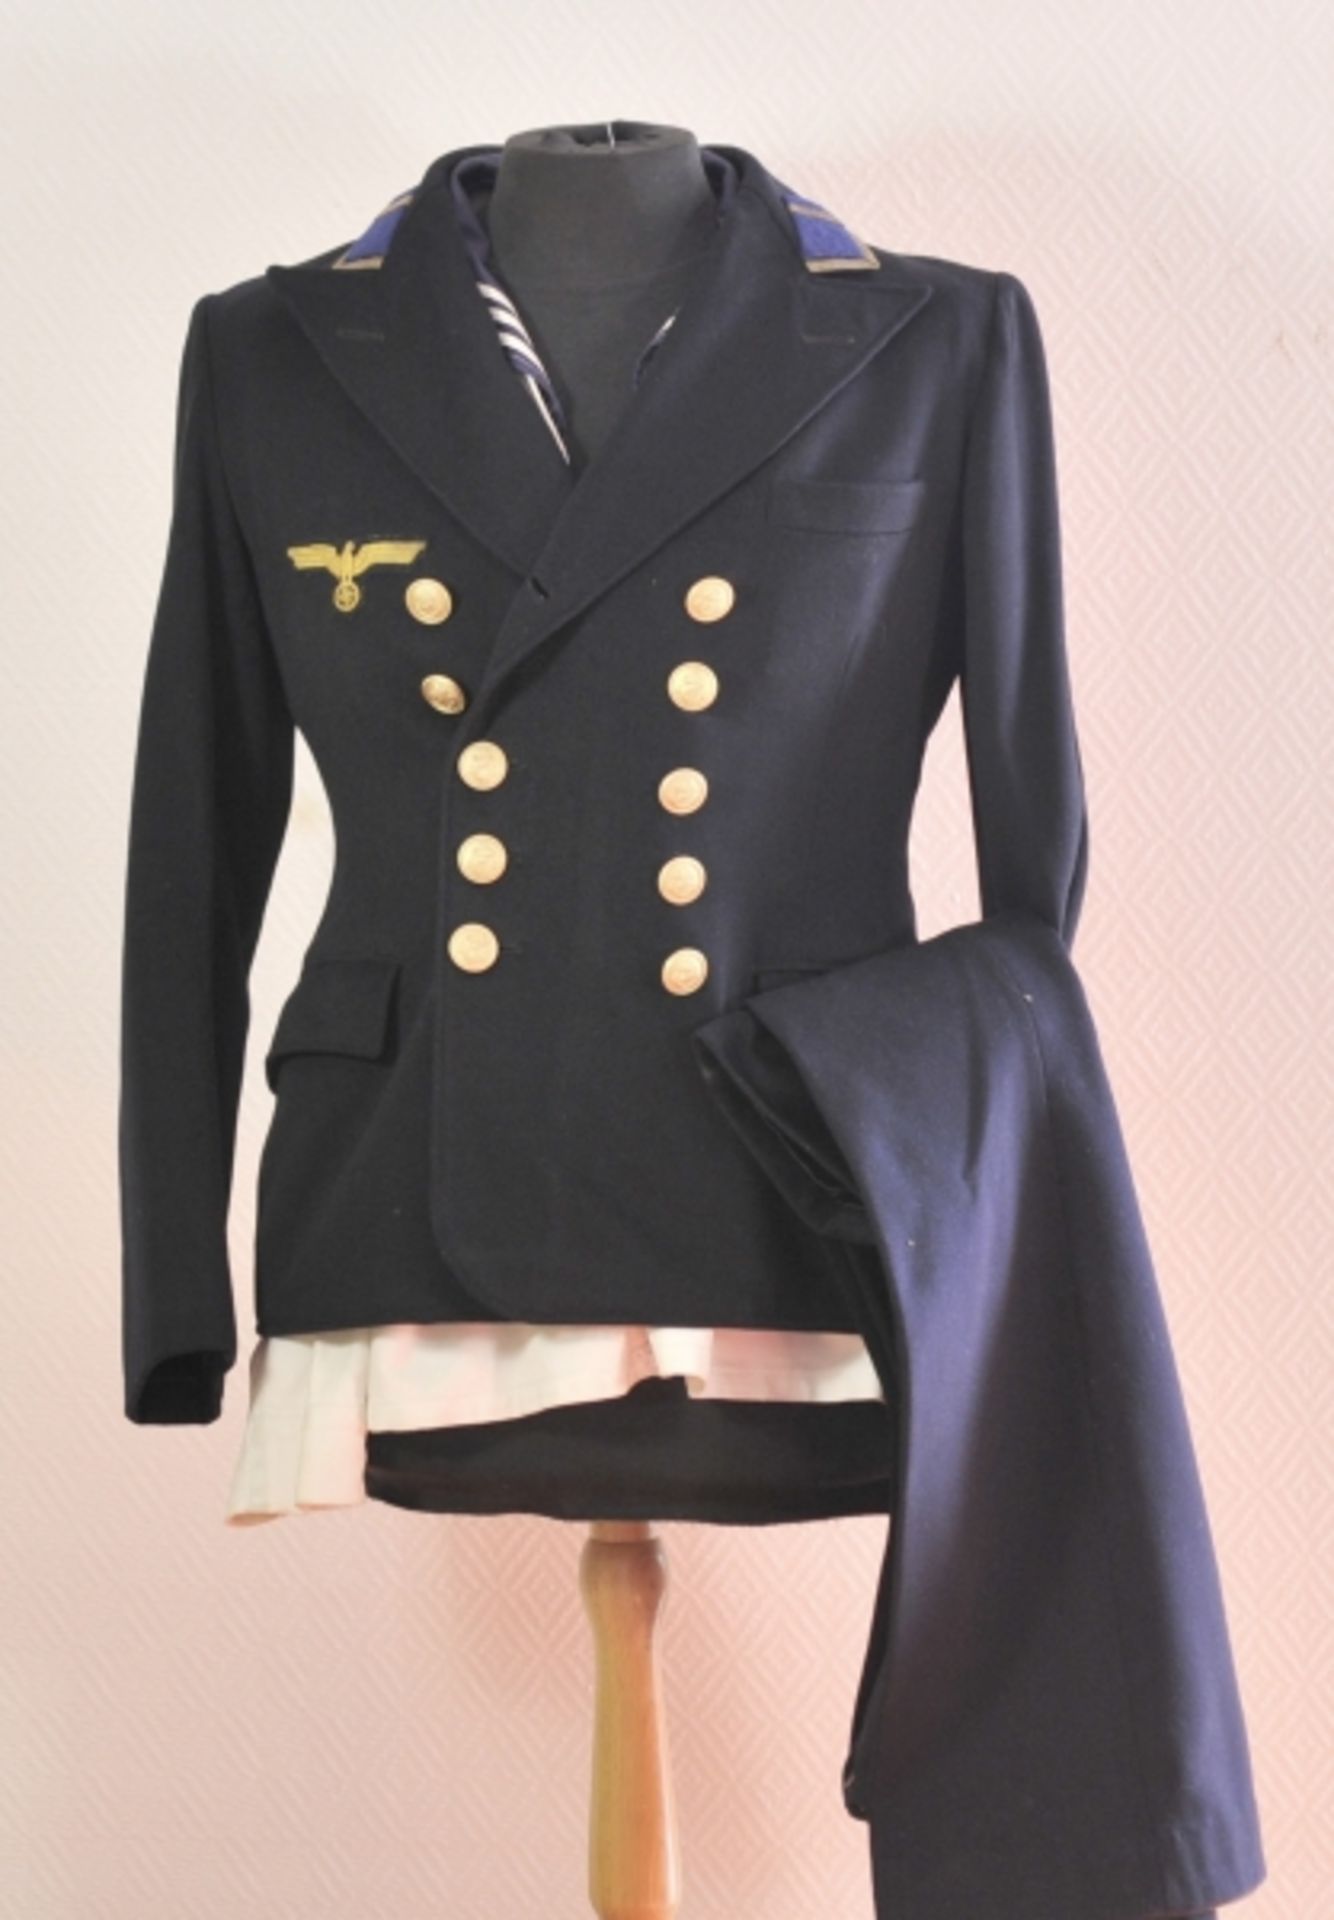 Uniformensemble eines Maschinen-Maat.1.) Jacket aus dunkelblauem Tuch, mit Effekten und Initialen